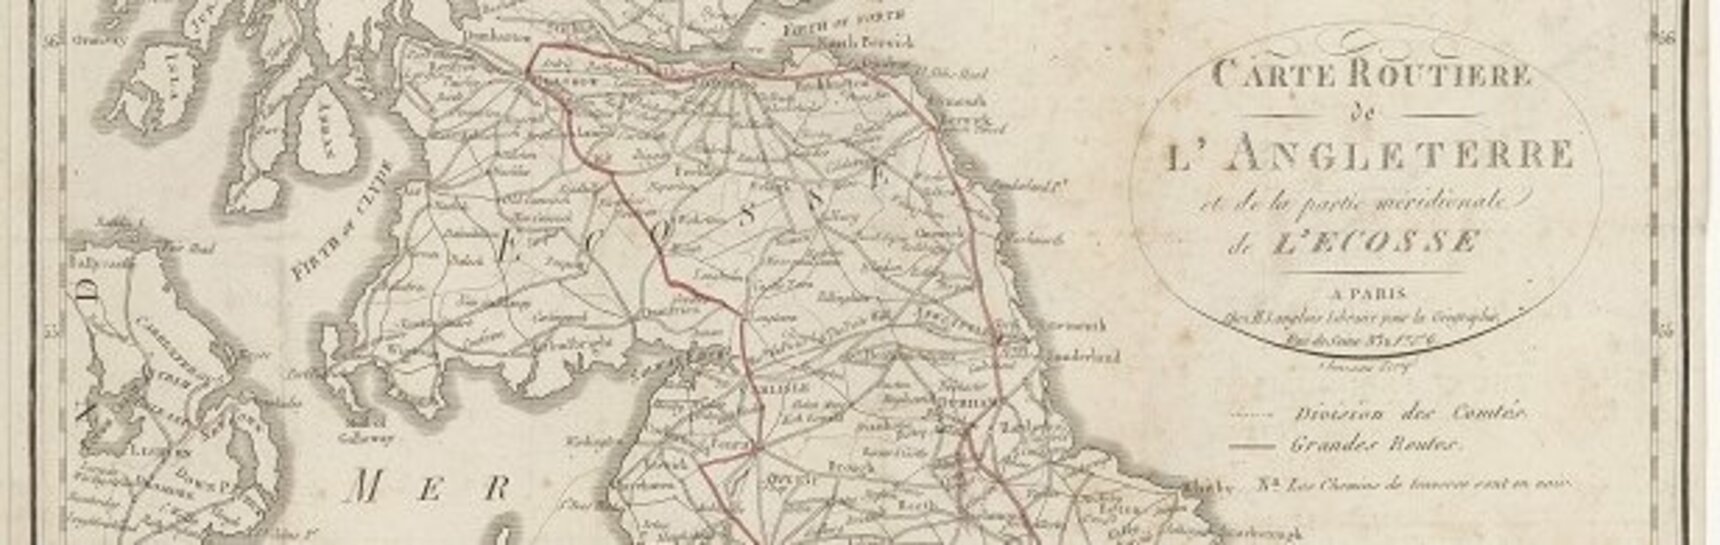 Landkarte von England, Wales und dem Süden von Schottland aus dem Reisetagebuch Erzherzog Johanns, um 1815, in Rot eingezeichnet die Reiseroute